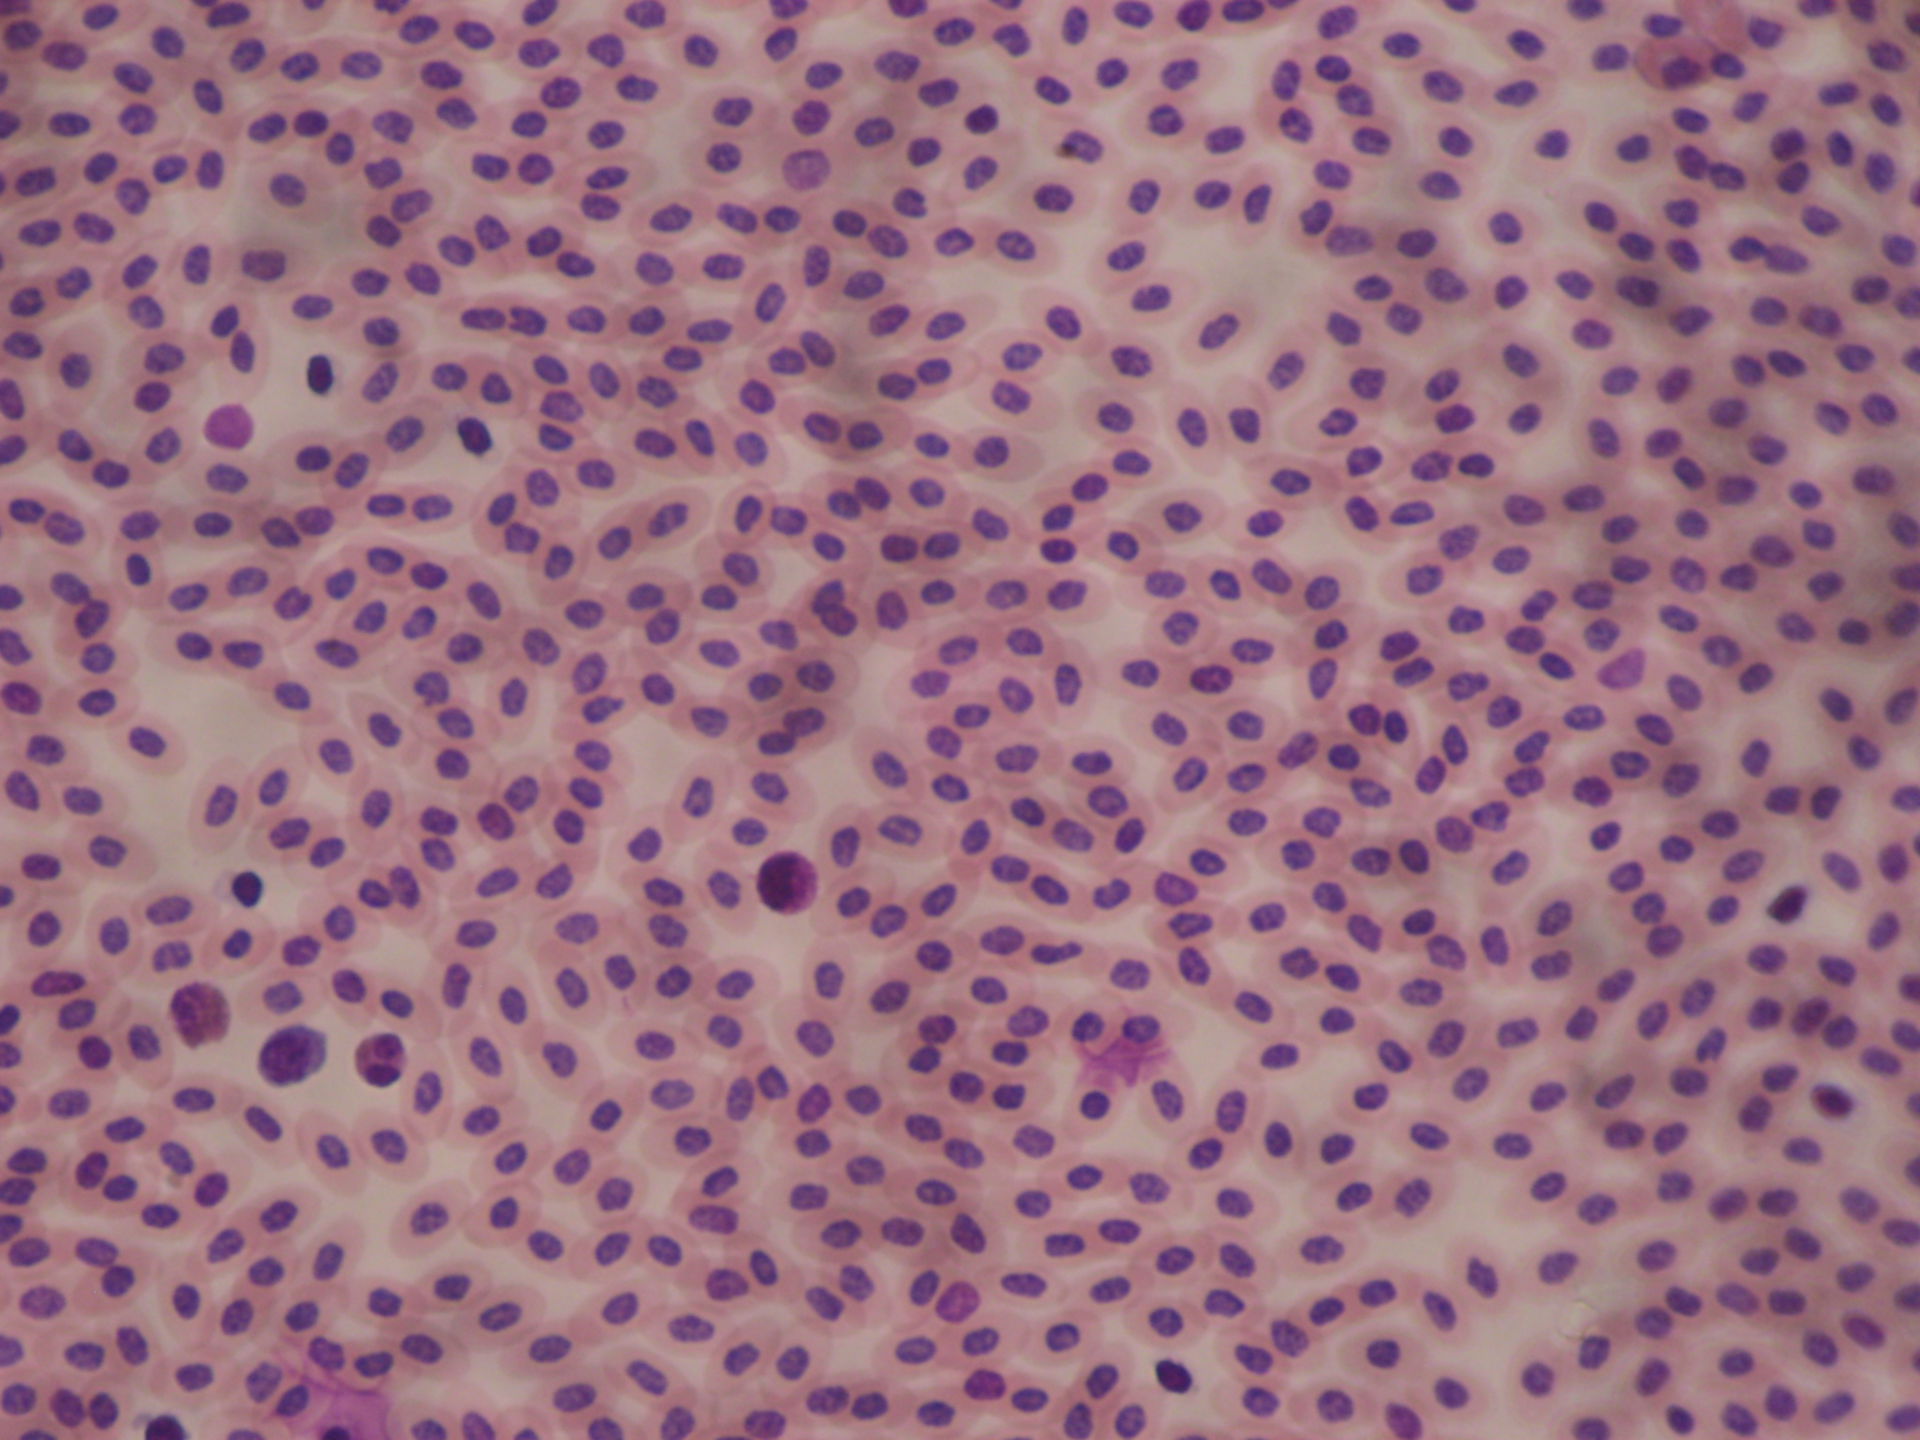 Blutausstrich des Huhnes 3 - Pseudoeosinophiler Granulozyt, Lymphozyt, Eosinophiler Granulozyt, Basophiler Granulozyt